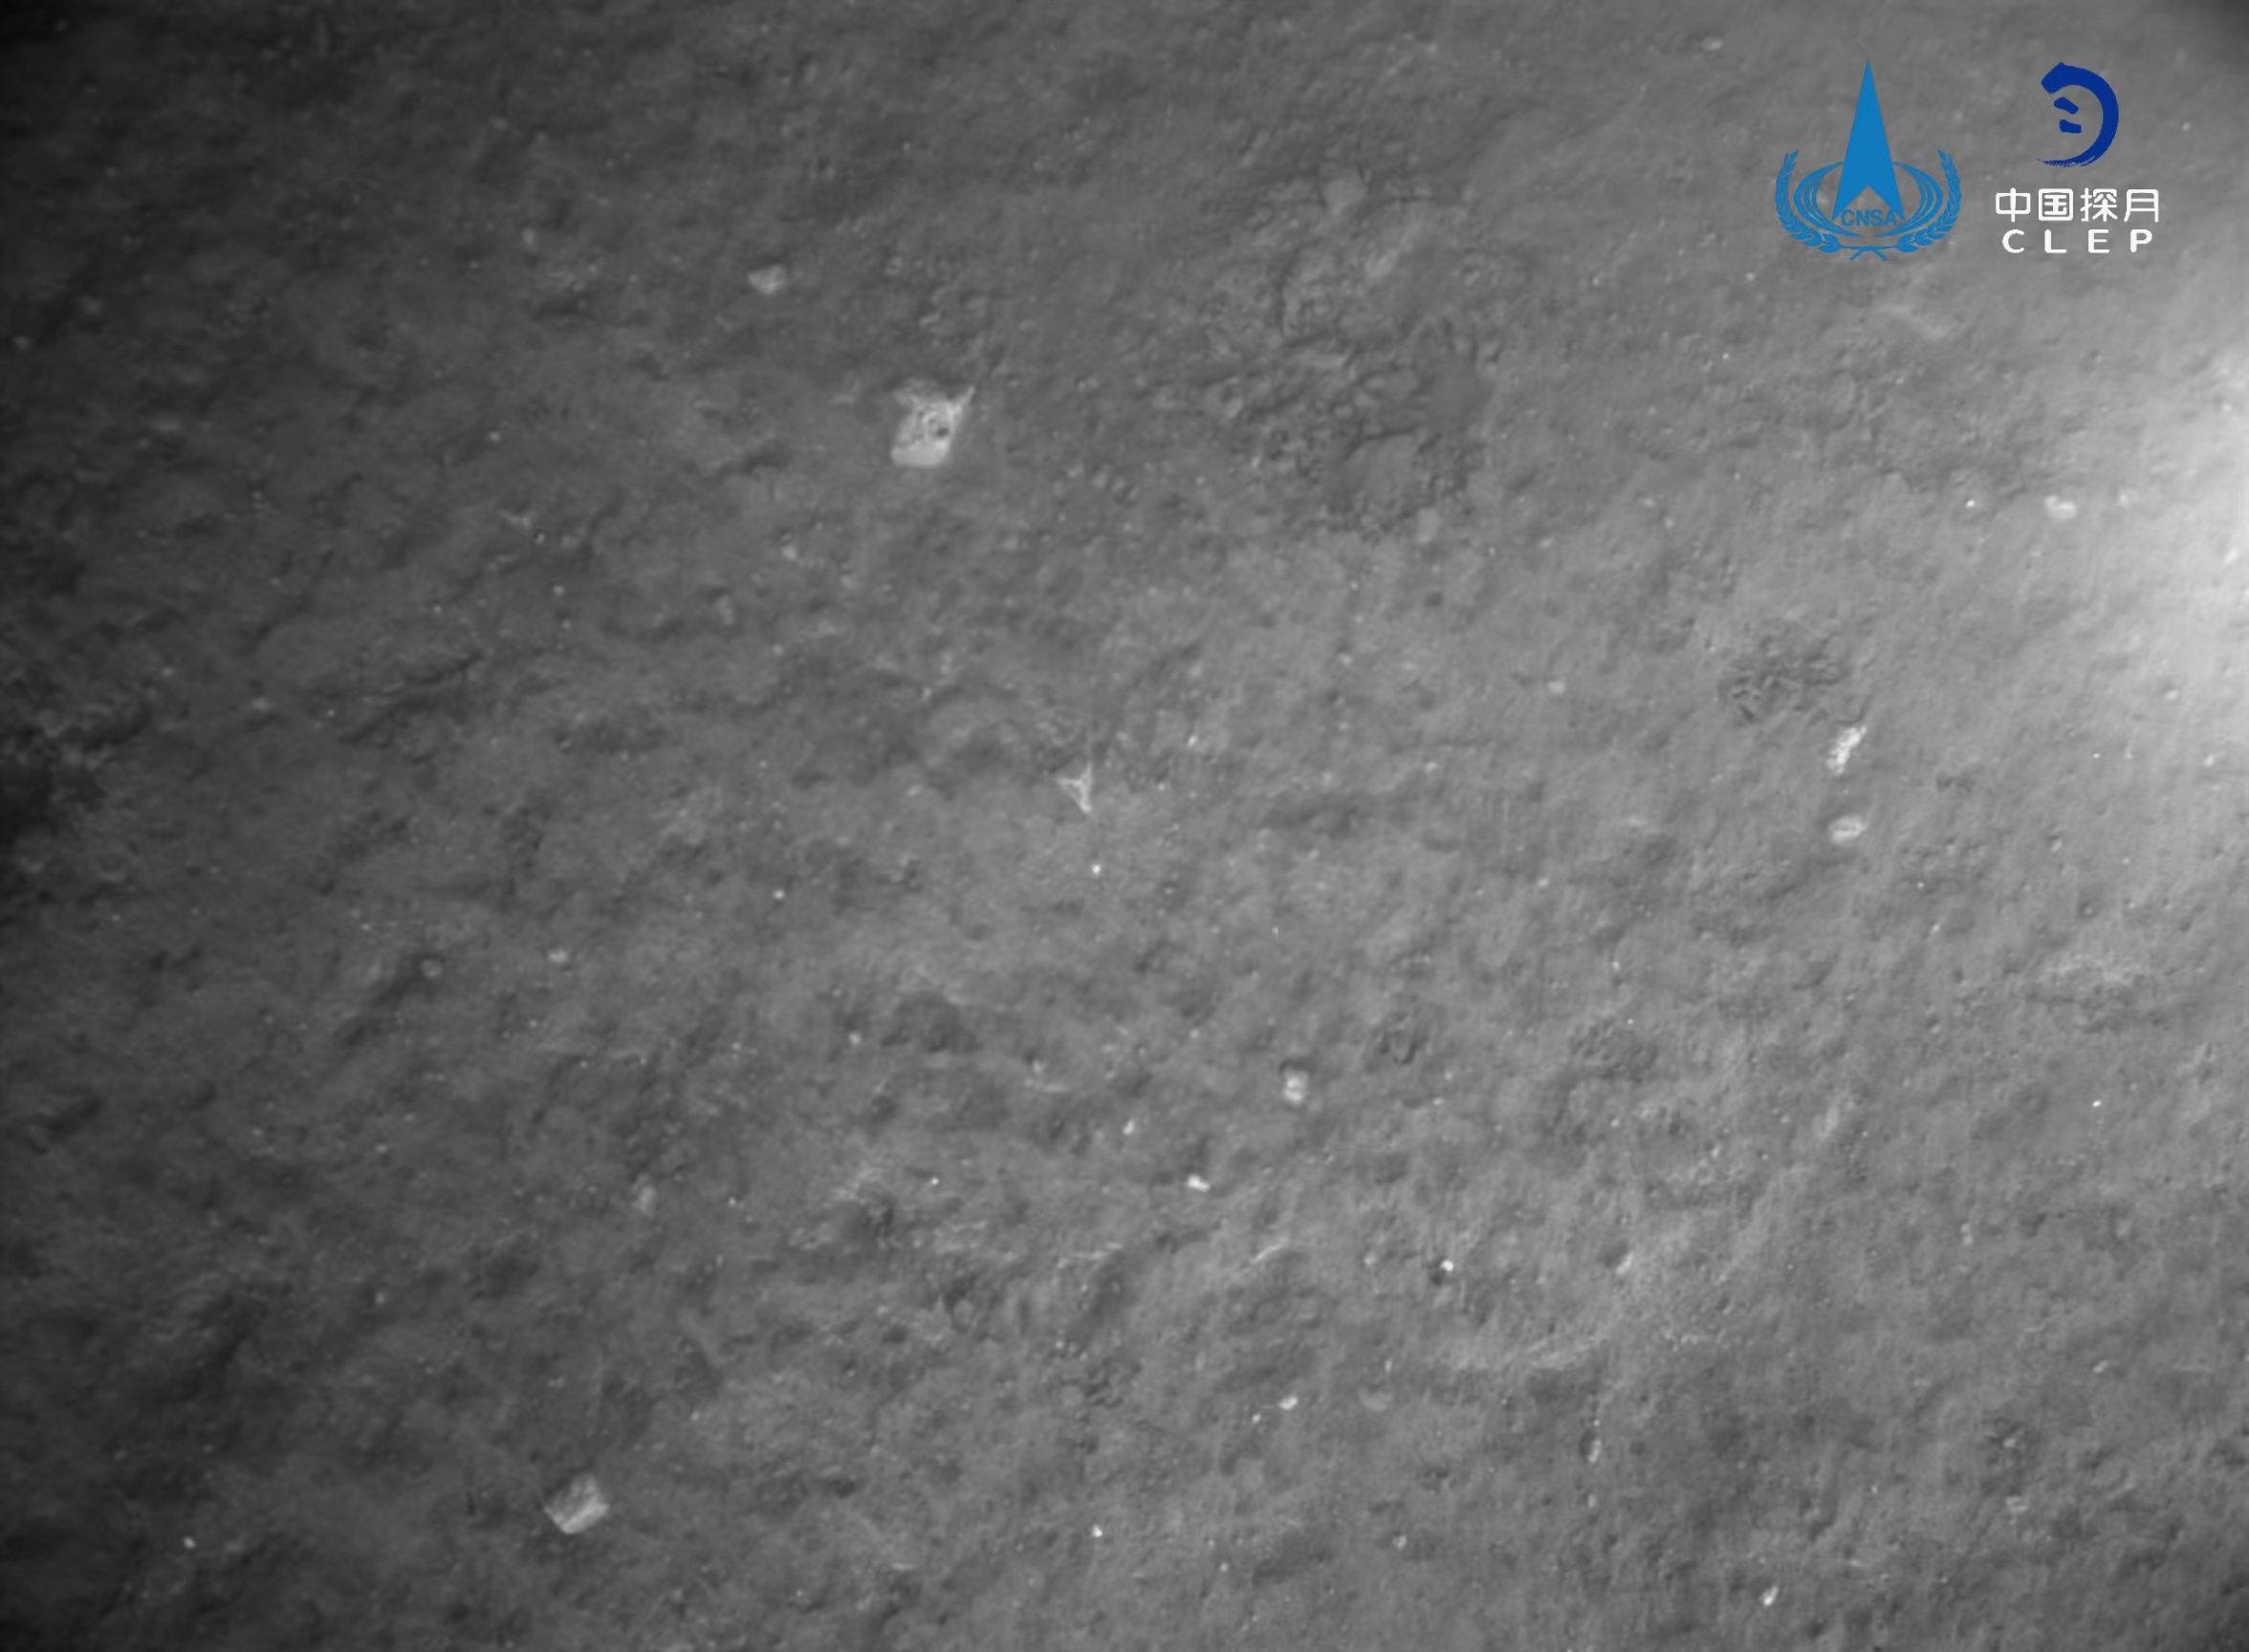 该图由降落相机在着陆器安全着陆后拍摄，图像显示着陆器底部相对平坦，分布有少量亮色石块。